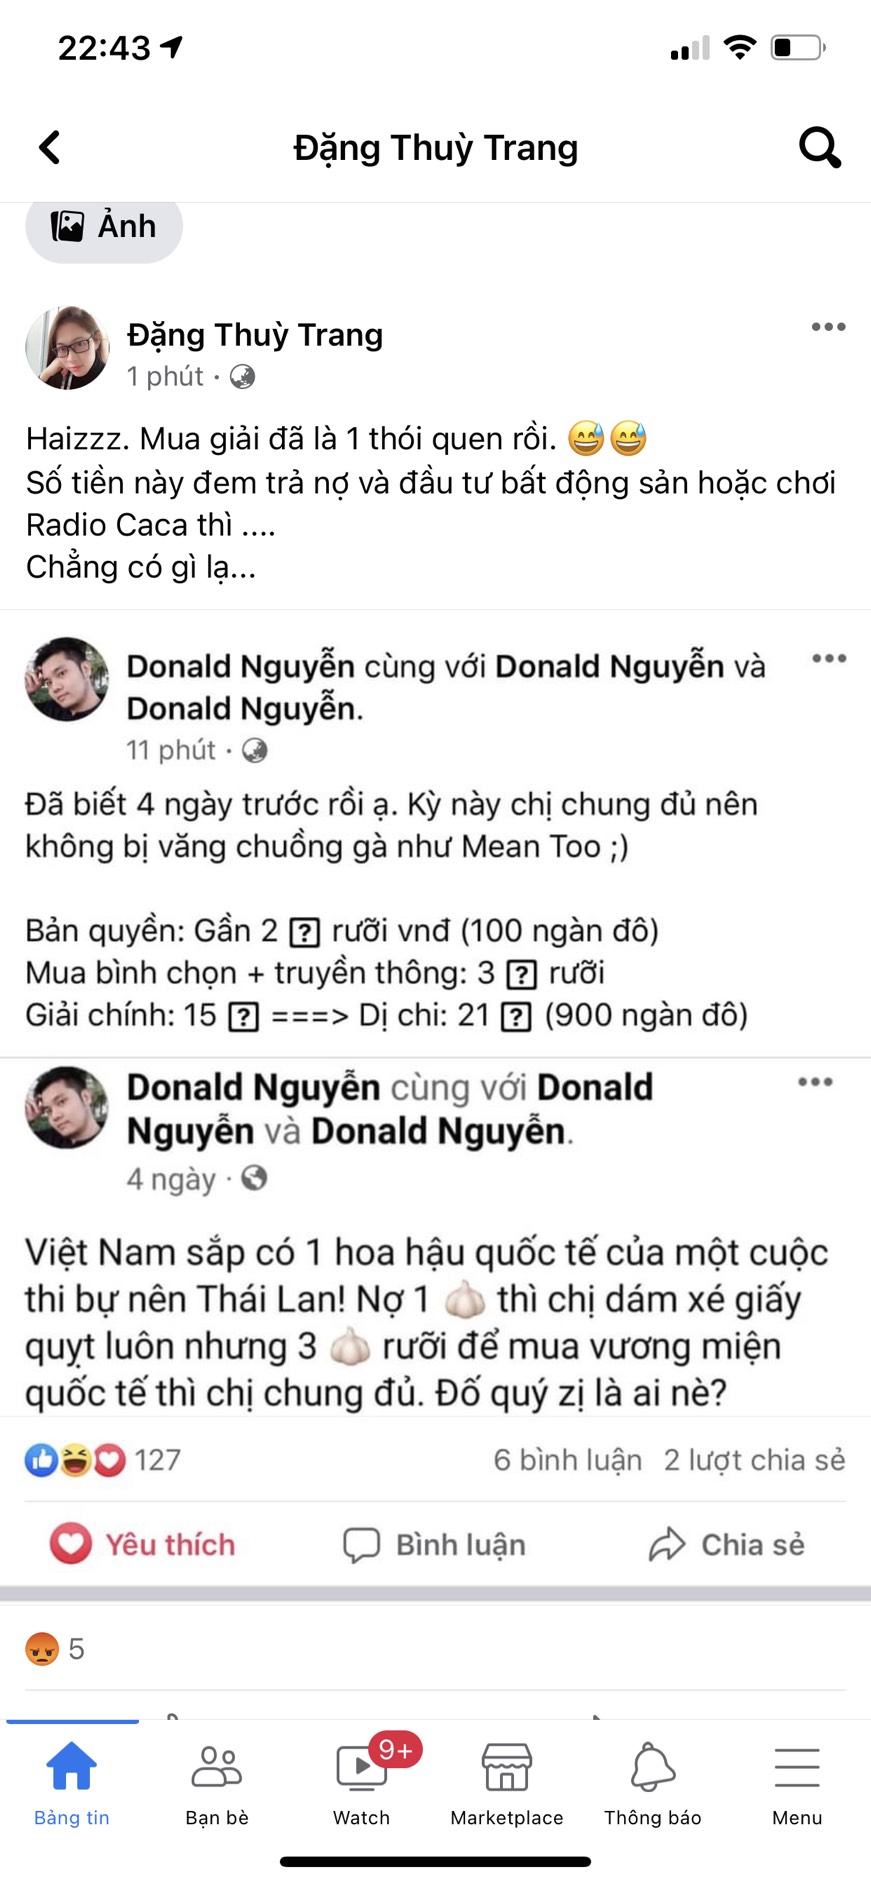 Không chỉ có chị gái Hoa hậu Đặng Thu Thảo, Donald Nguyễn cũng đăng tải bài viết với nội dung tương tự